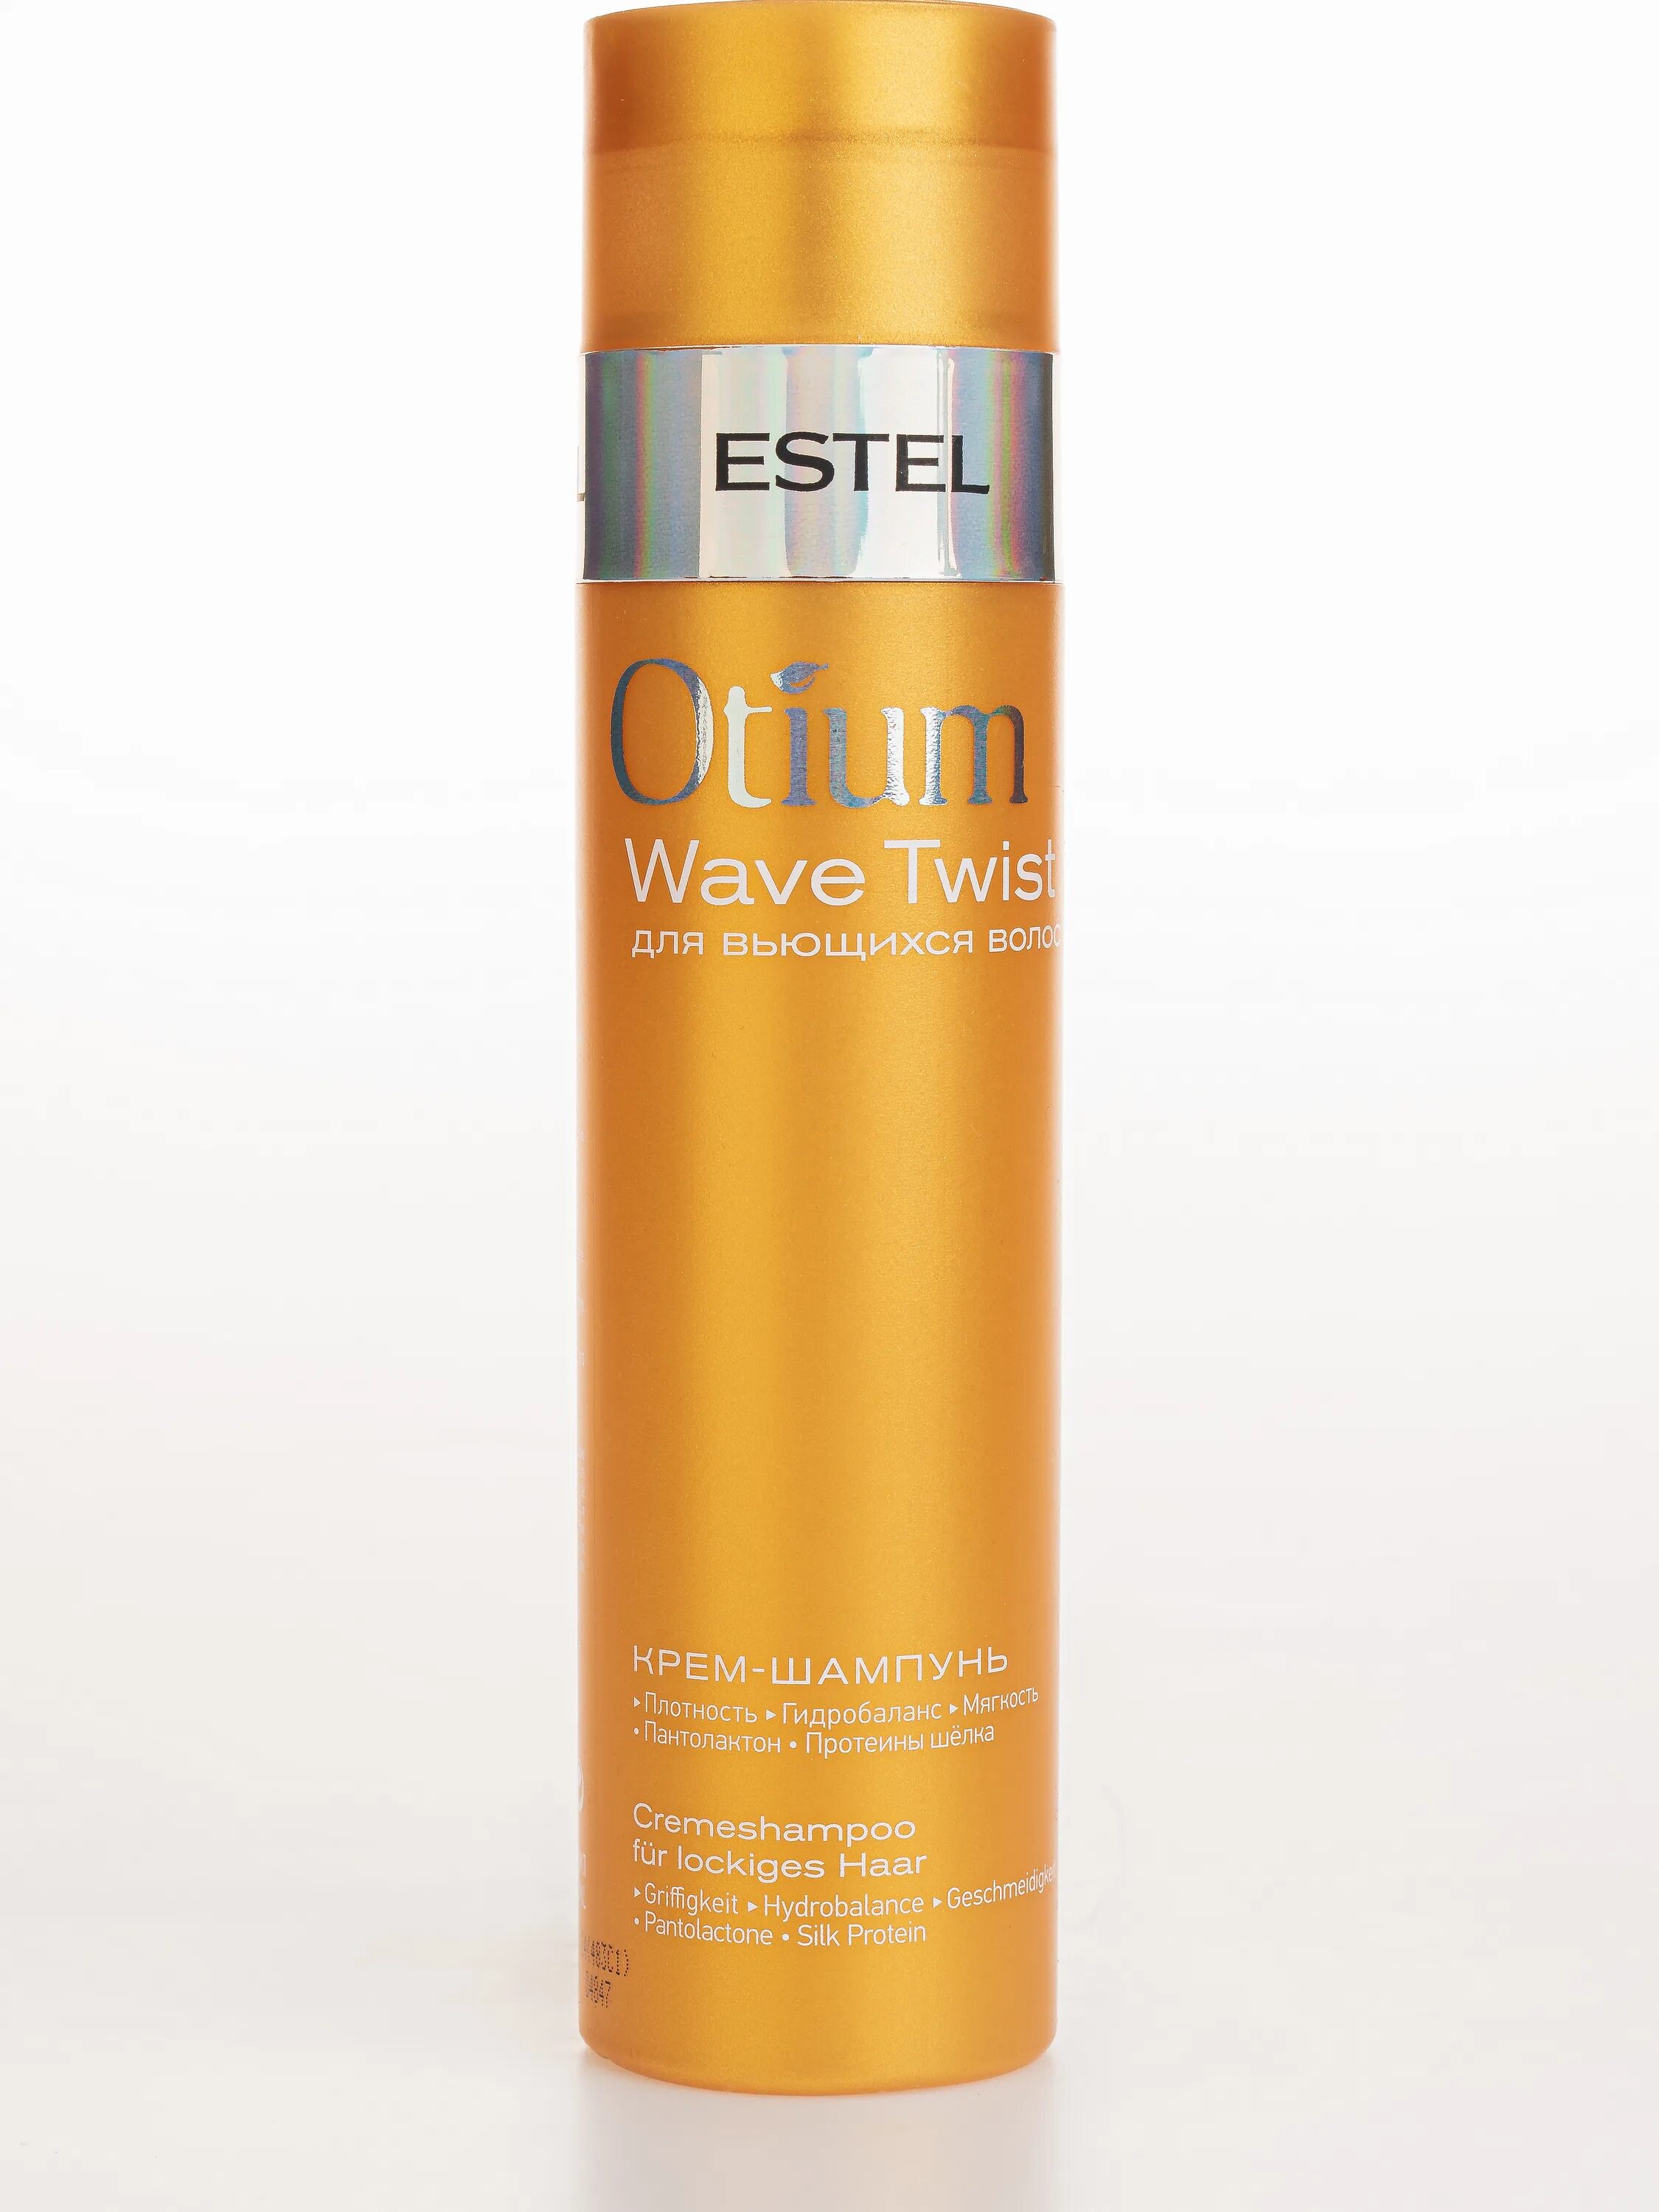 Шампунь Estel Otium Wave Twist для вьющихся волос. Estel крем-шампунь Otium Wave Twist. Estel Otium Wave Twist крем-шампунь для вьющихся волос 250 мл. Estel Otium Wave Twist крем шампунь для вьющихся. Шампунь для кудрявых волос отзывы